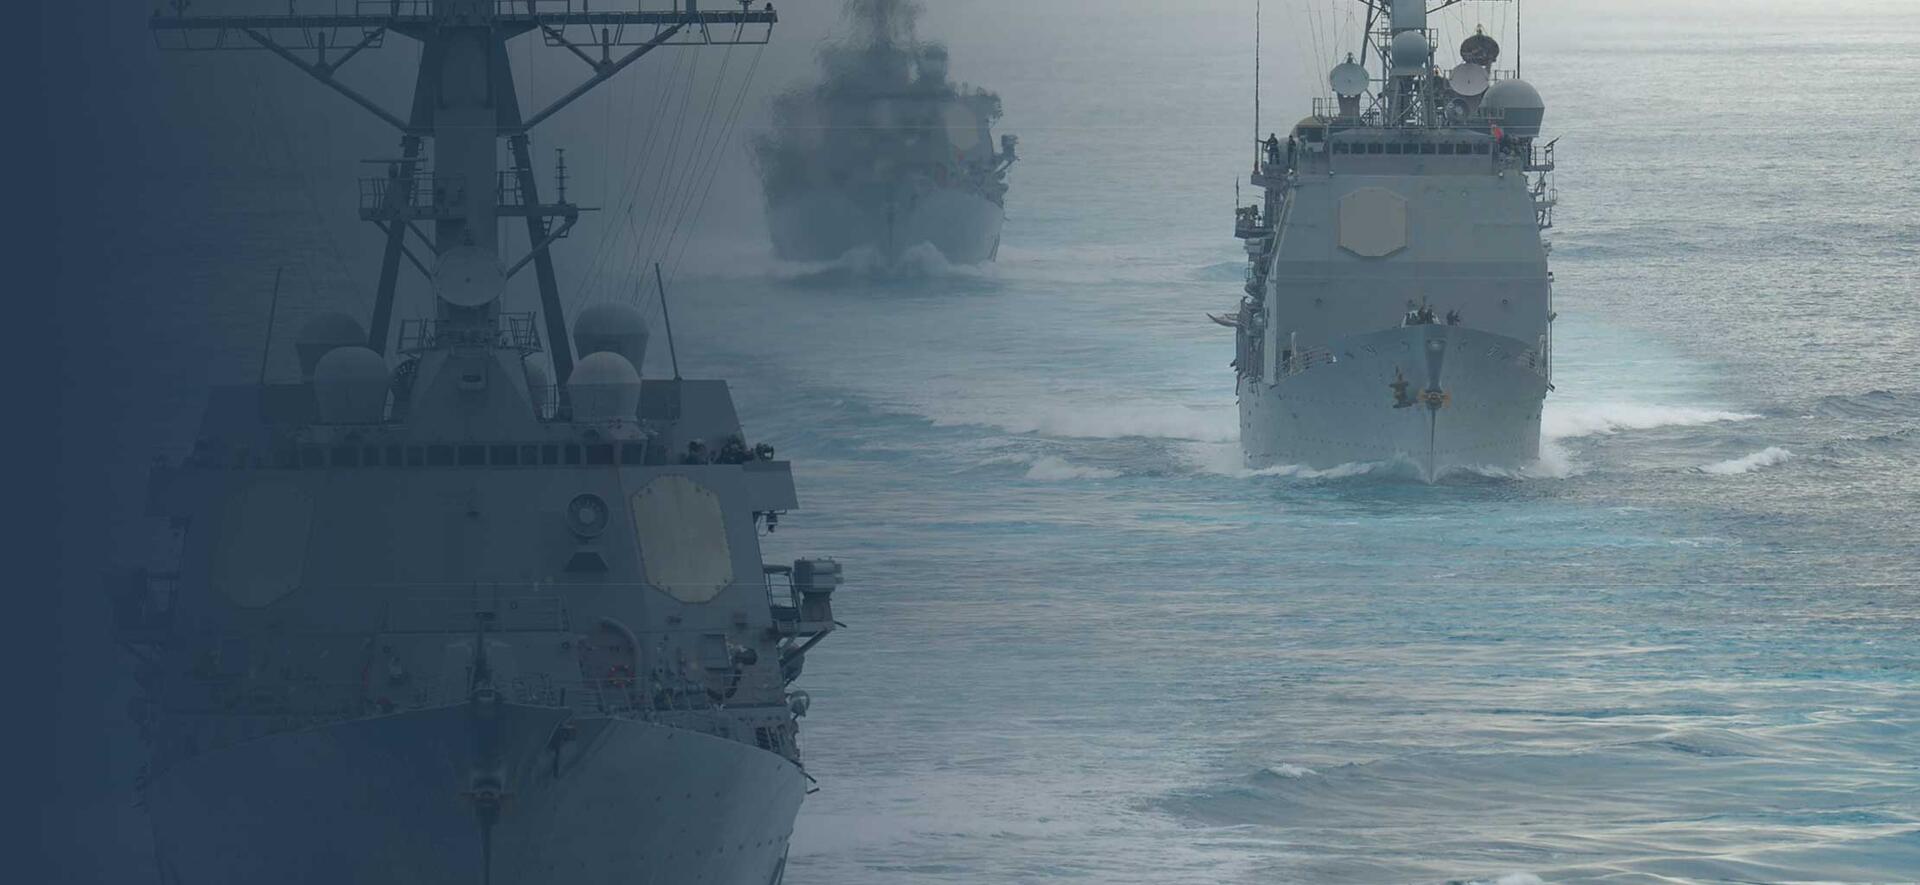 Military Ships at Sea